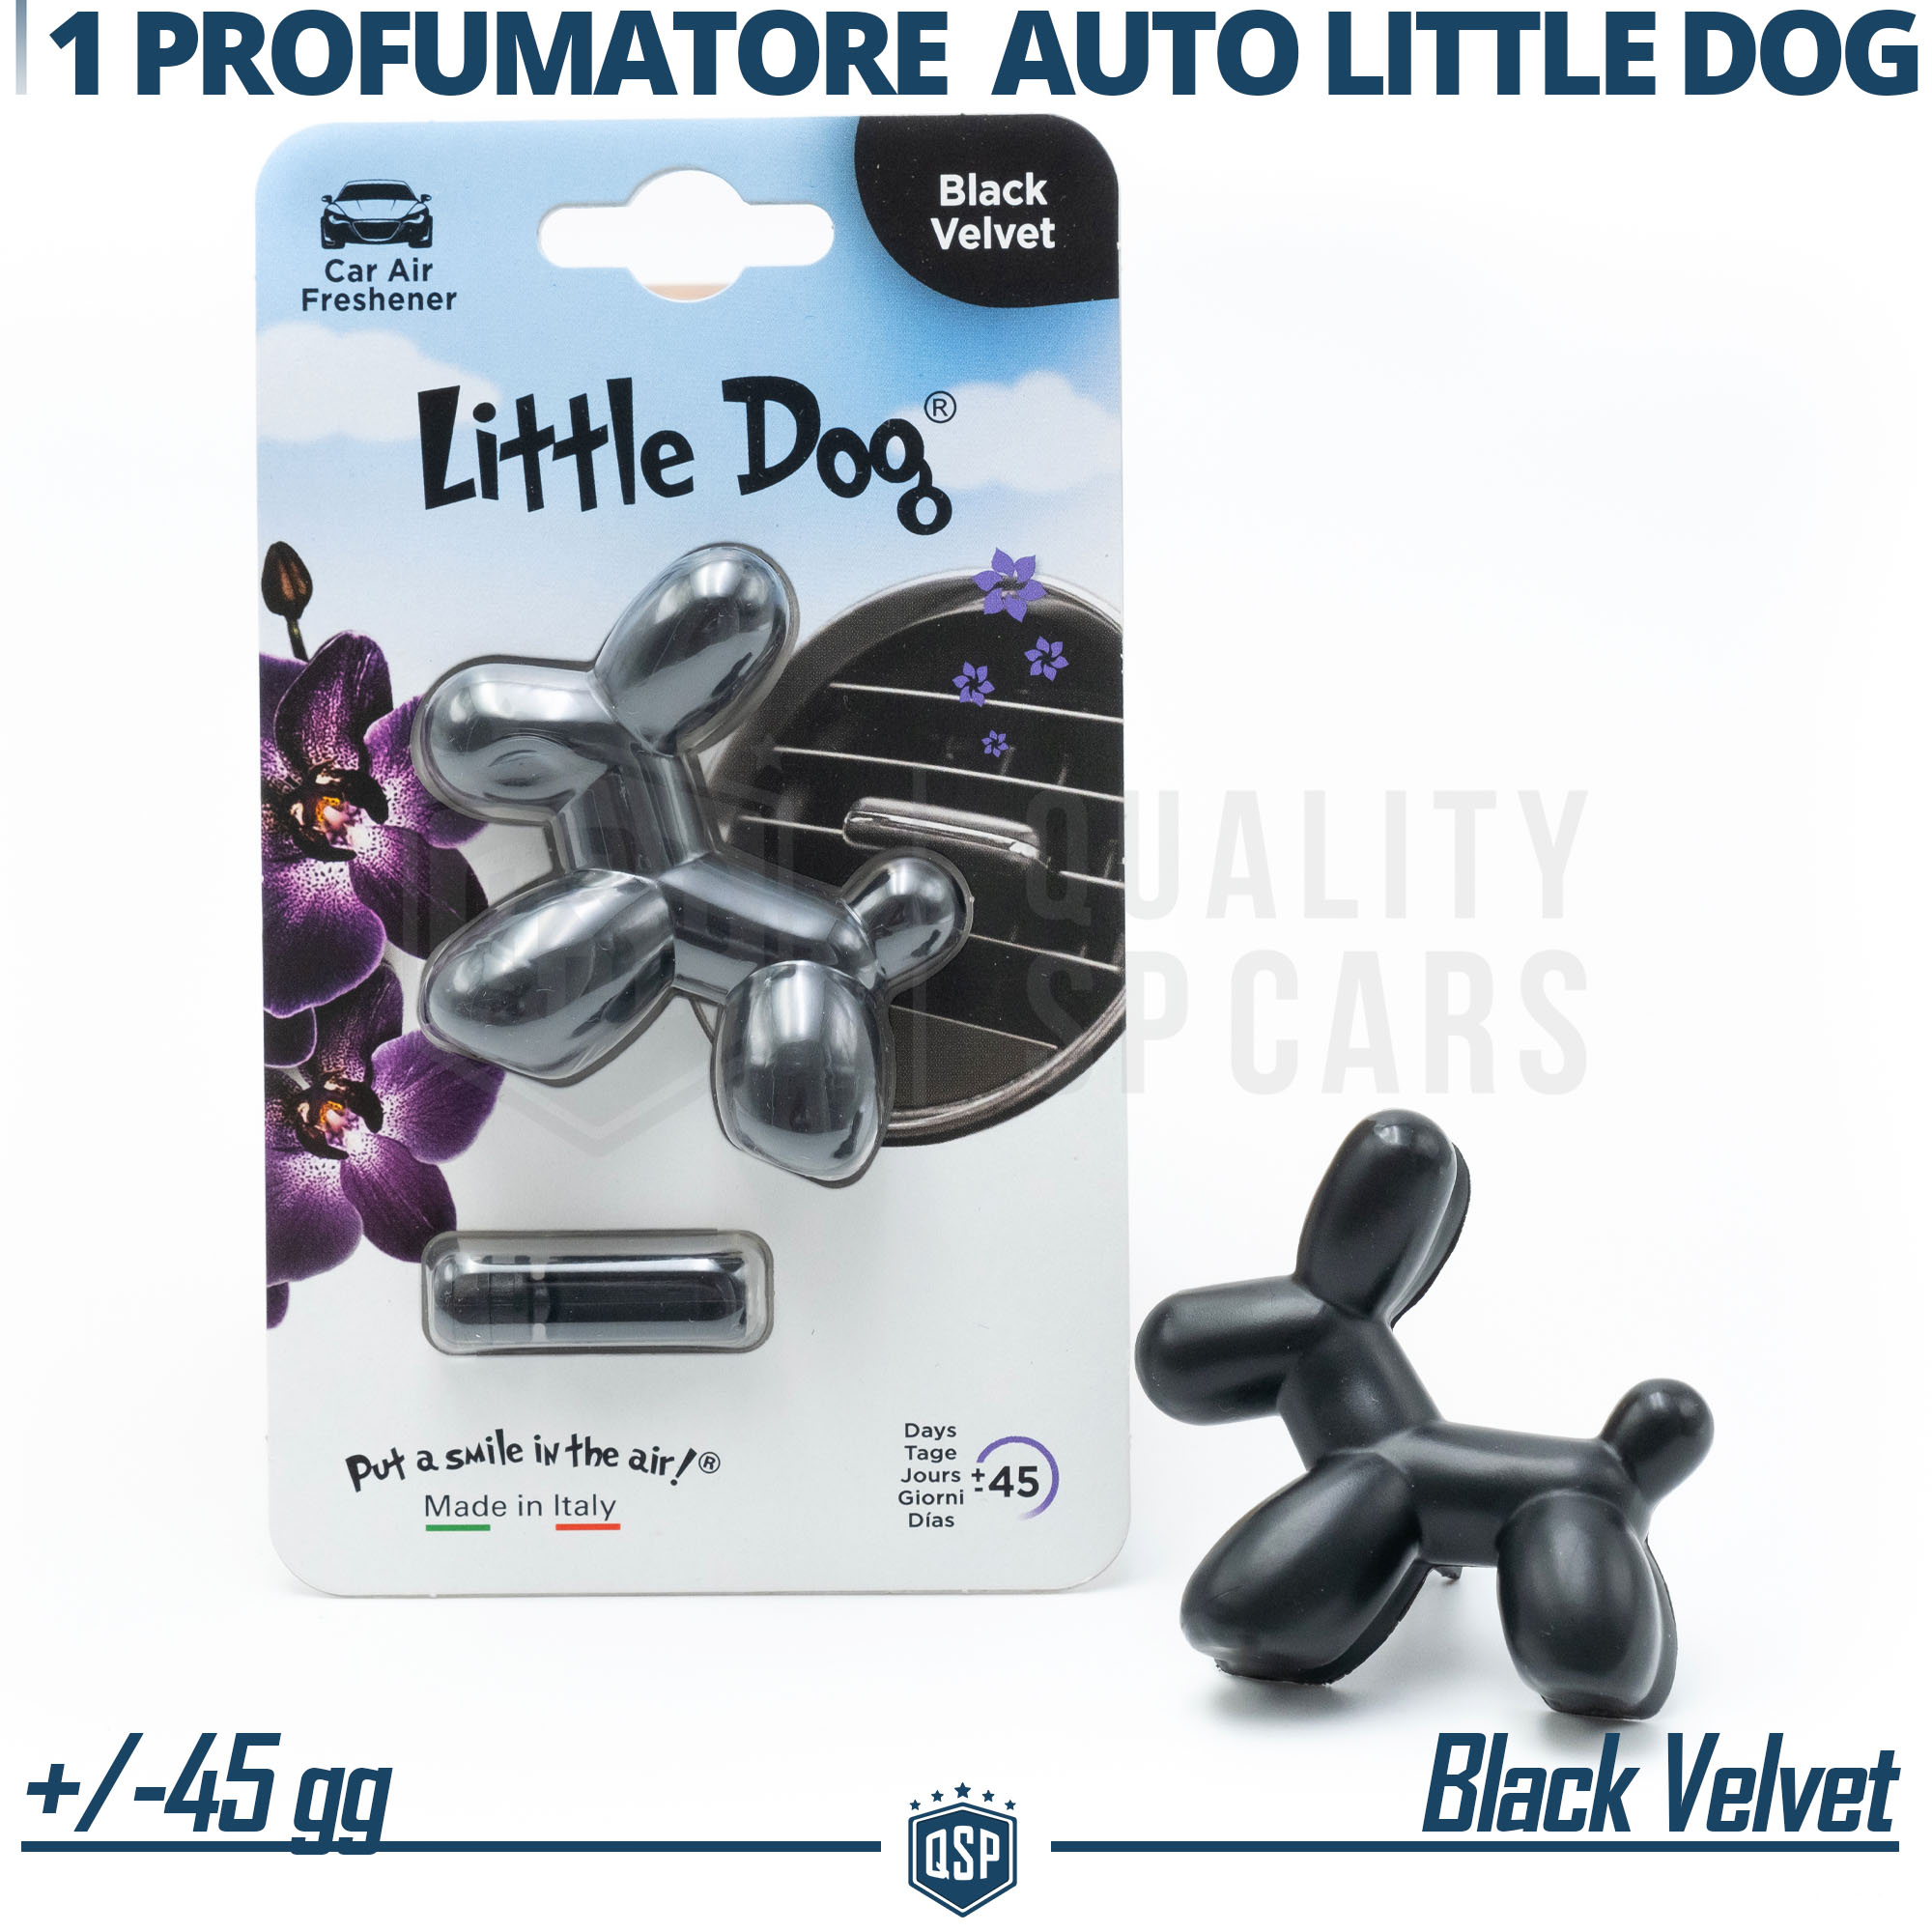 PROFUMATORE Auto Little Dog® NERO Applicabile su Bocchette Audi BLACK  VELVET 45g